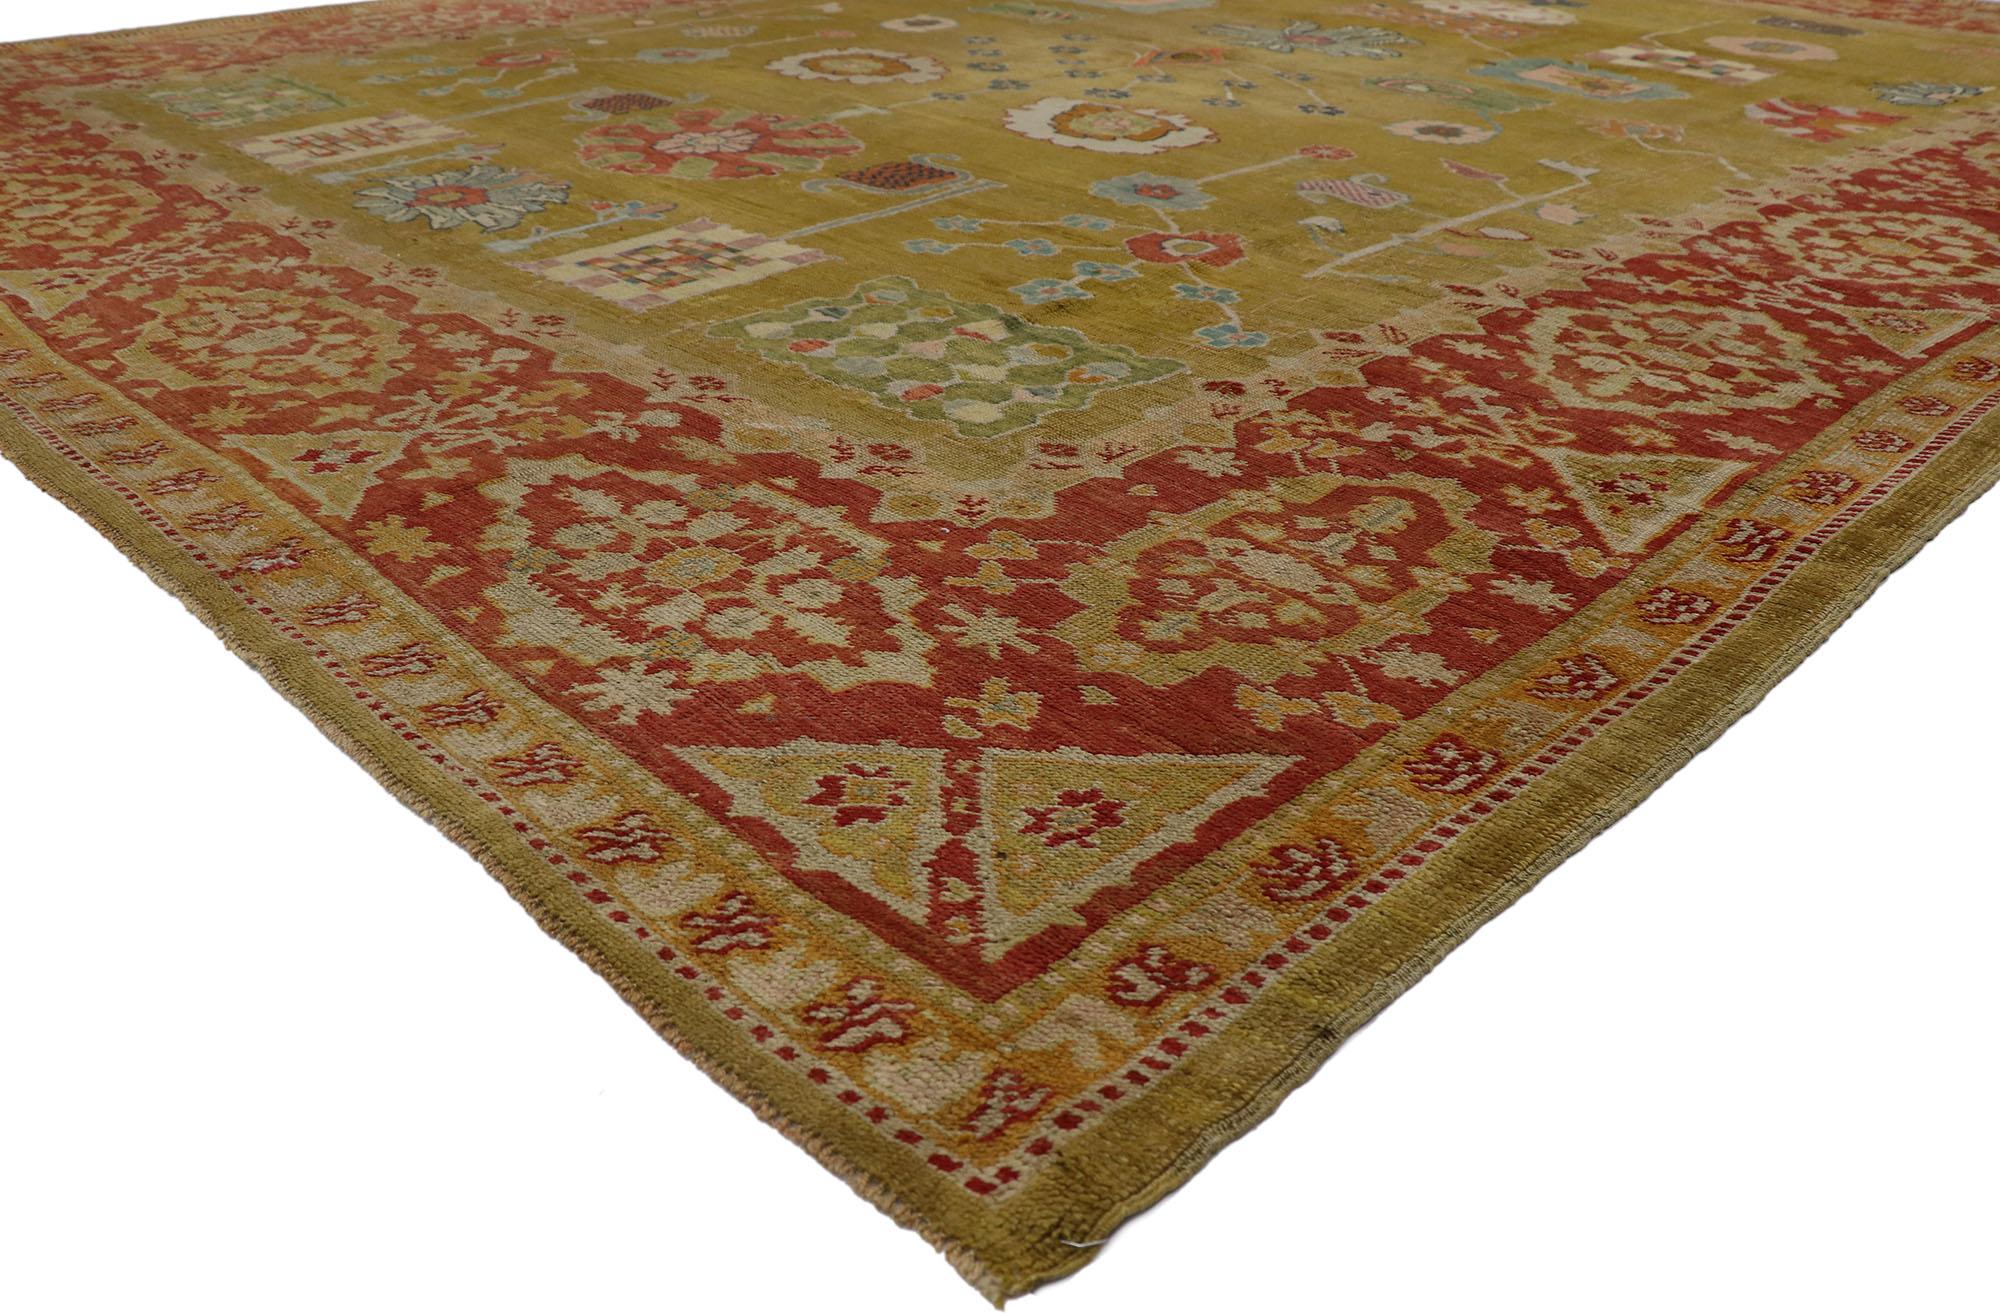 53576 Vieux tapis turc Oushak avec style Arts & Crafts 11'07 x 14'11. Avec son design intemporel et ses couleurs terreuses, ce tapis turc Oushak vintage en laine noué à la main étonne par sa beauté. Le champ vert-brunâtre abrasé présente un motif